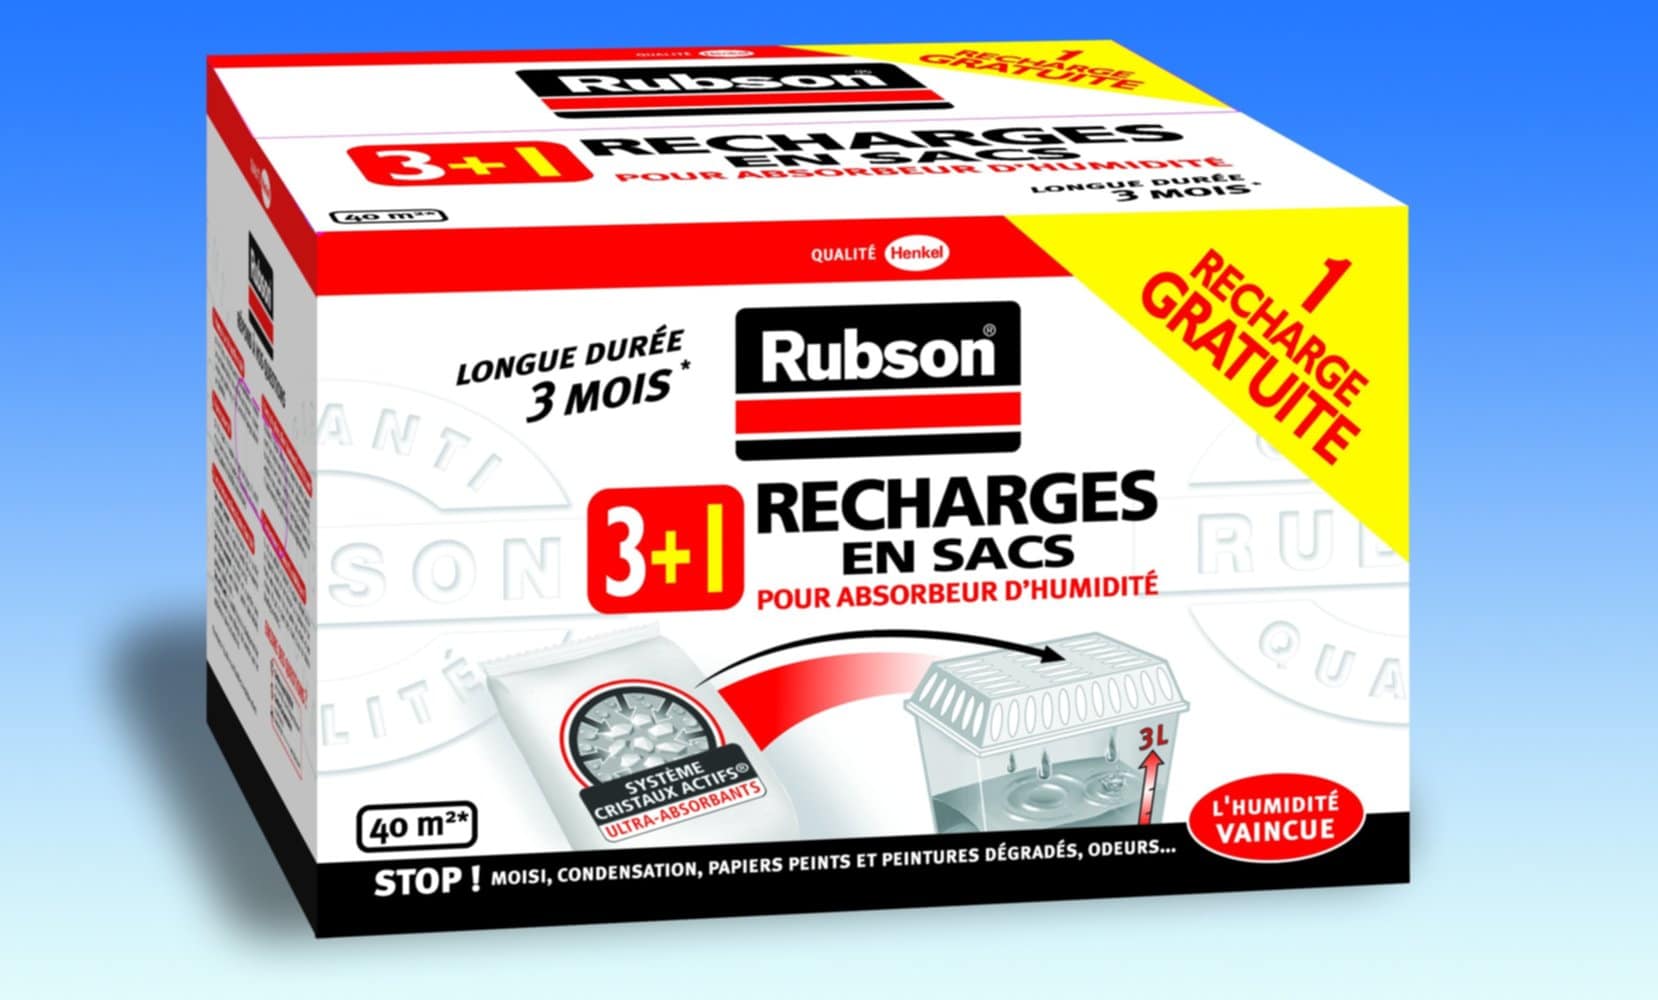 4 recharges en sac pour absorbeur d'humidité Classic - RUBSON - Mr.Bricolage